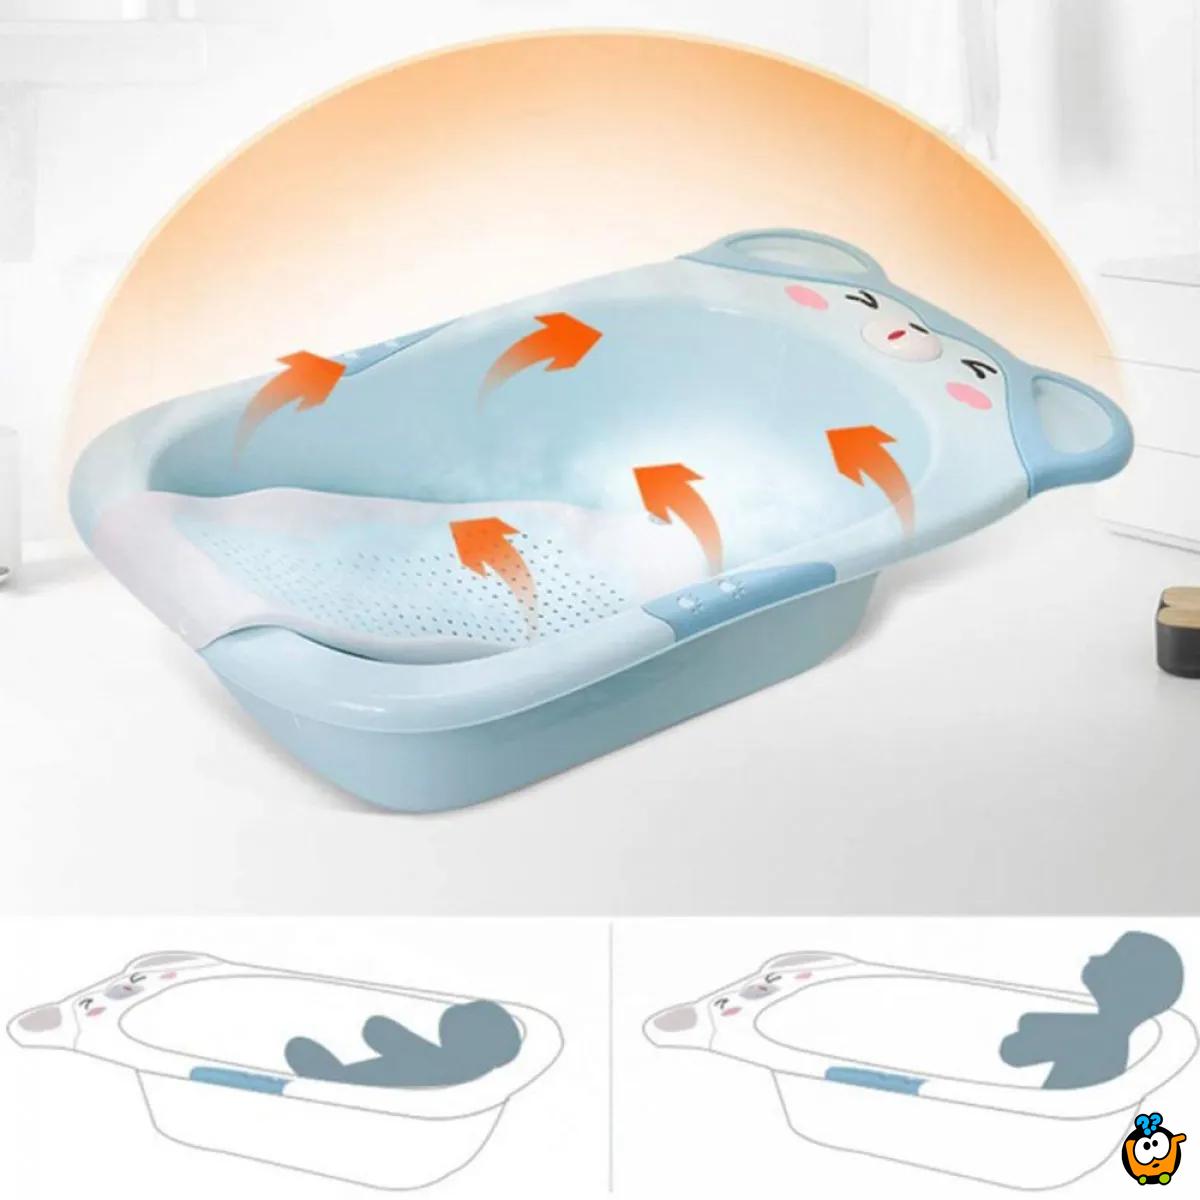 Baby bath - Kadica za kupanje beba